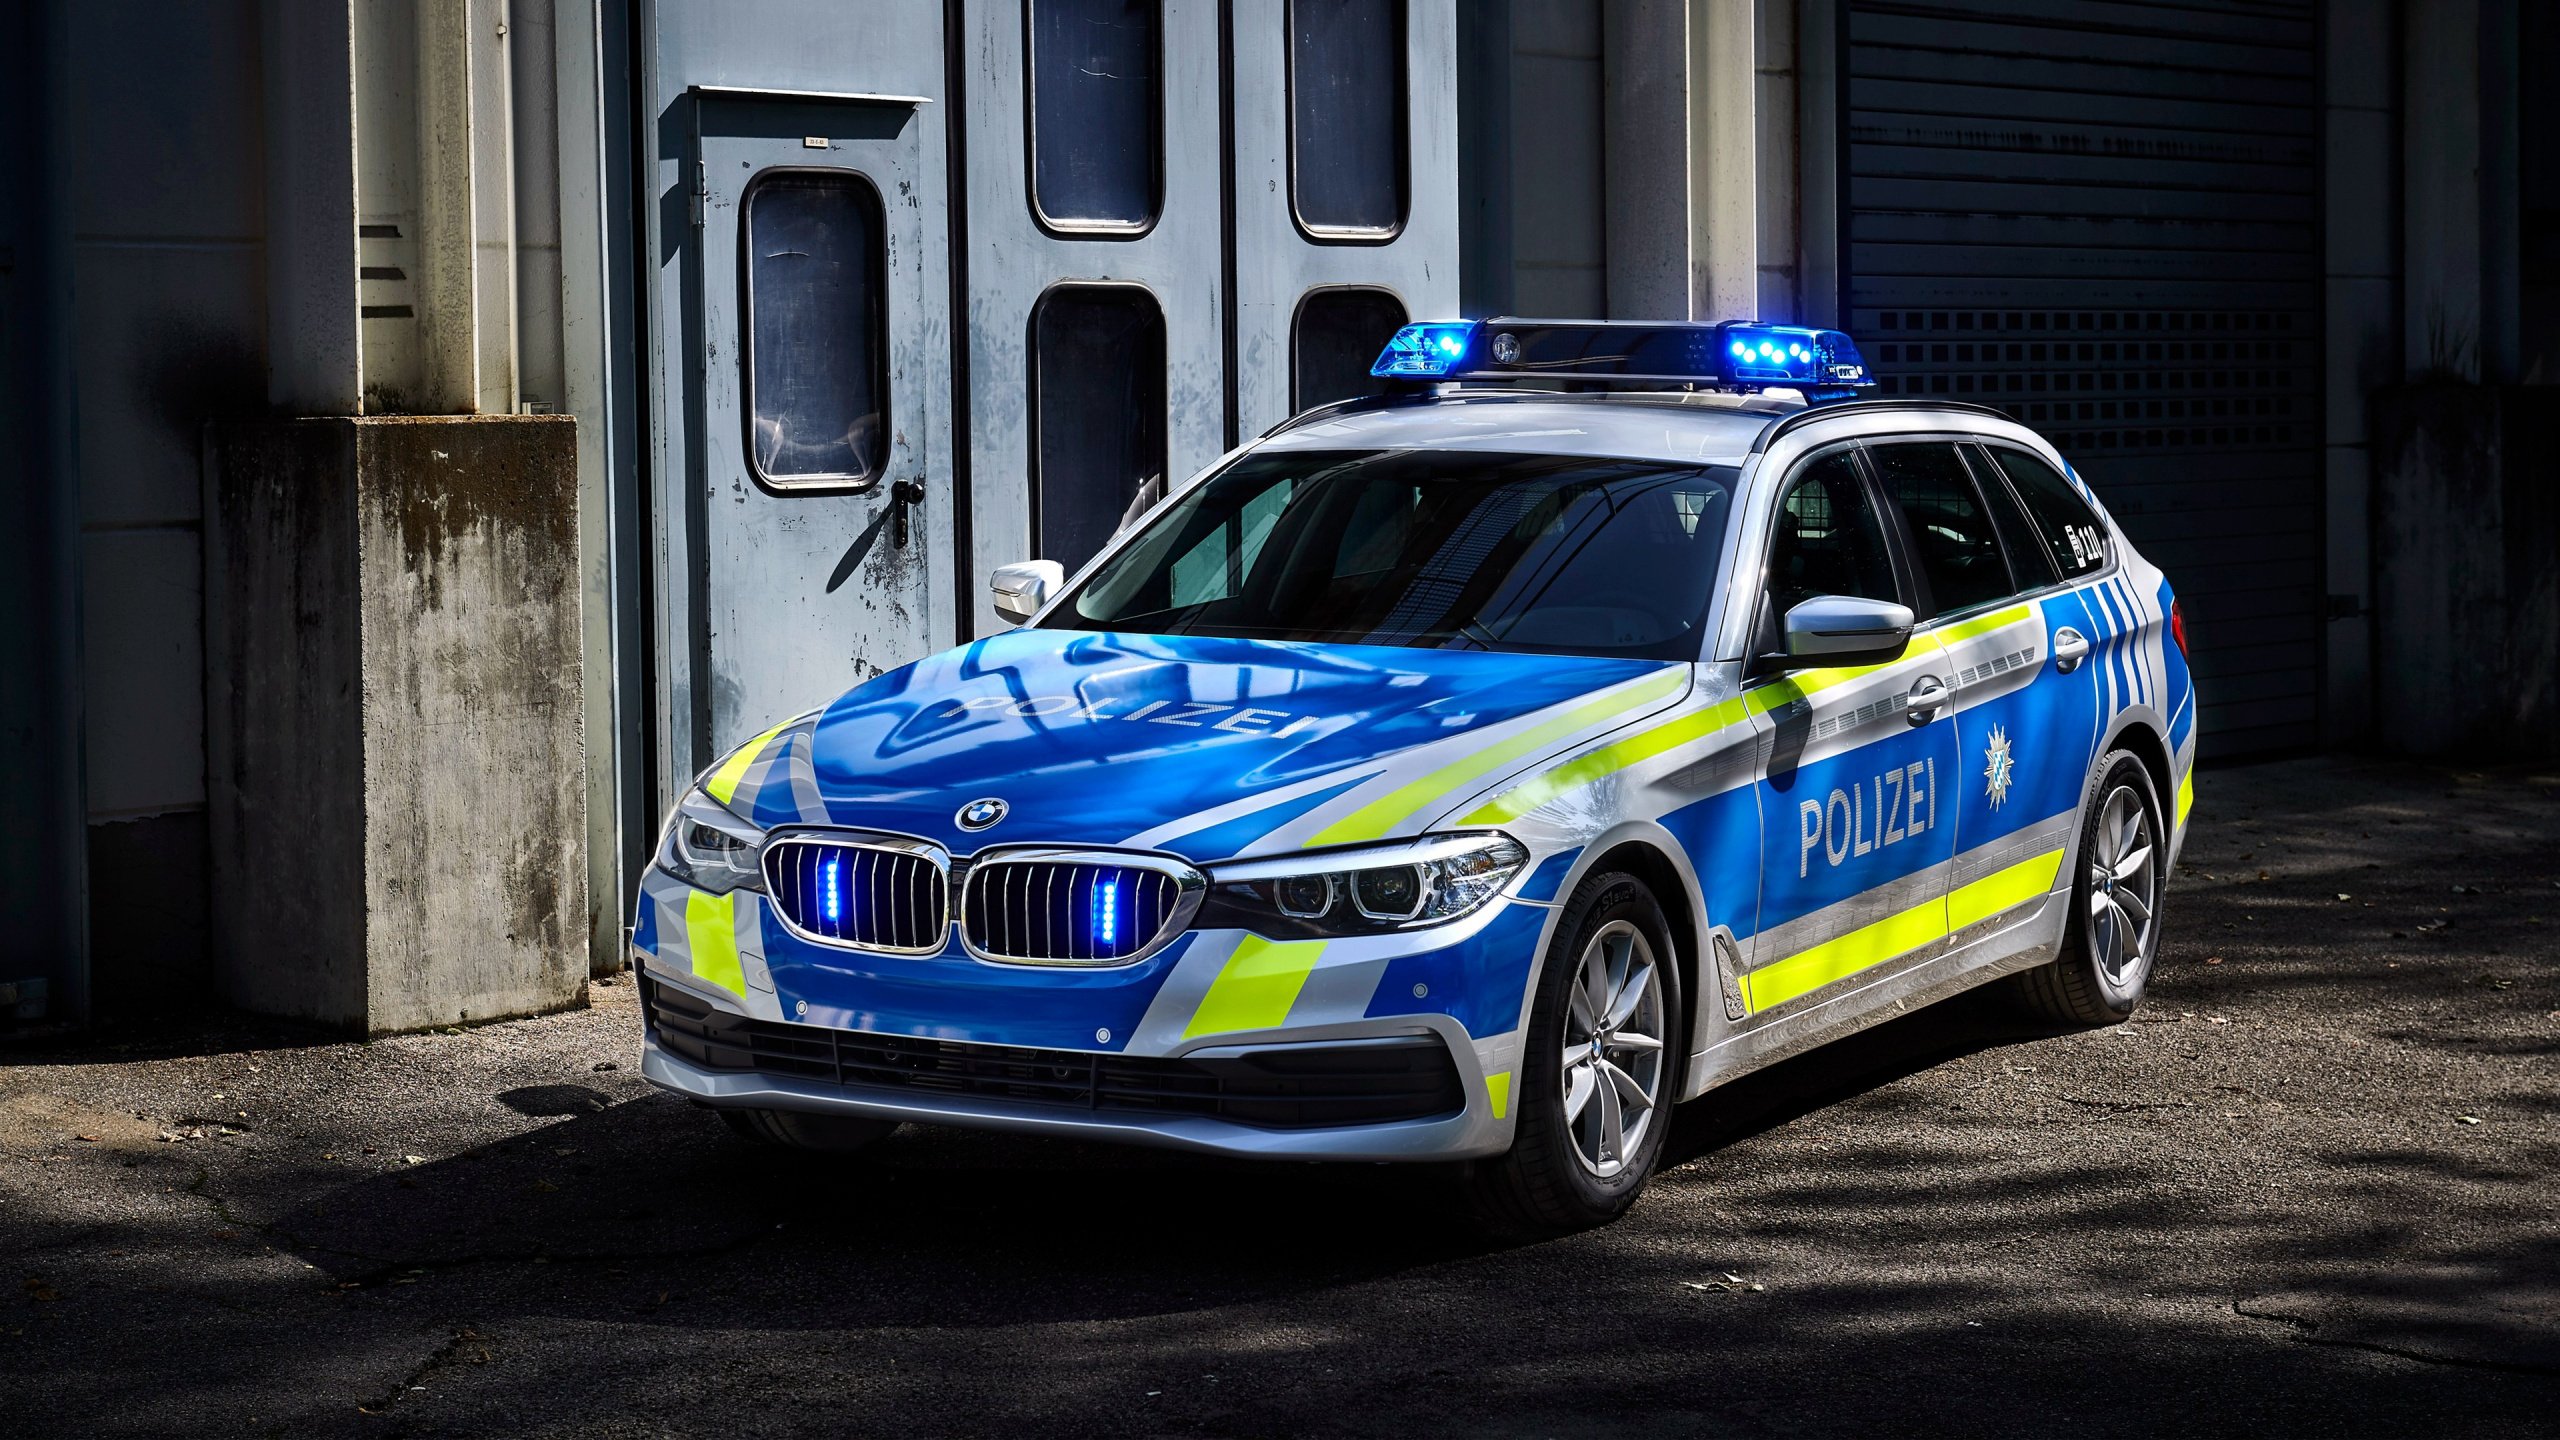 Полиция БМВ 530. BMW m3 Police. БМВ 545i Police. BMW Polizei. Полицейская машина автомобиля